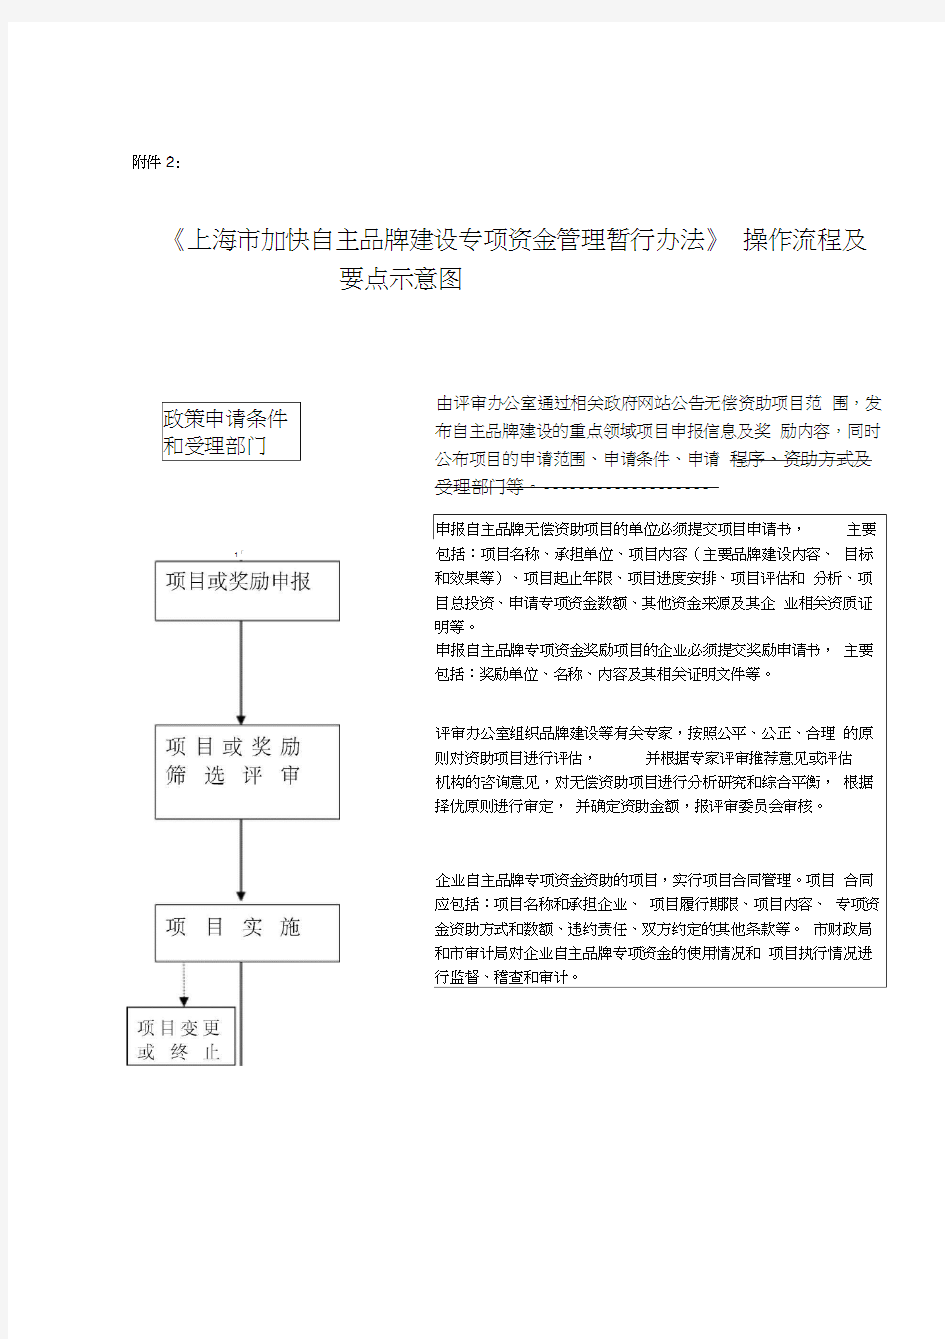 《上海市加快自主品牌建设专项资金管理暂行办法》操作流程及要点